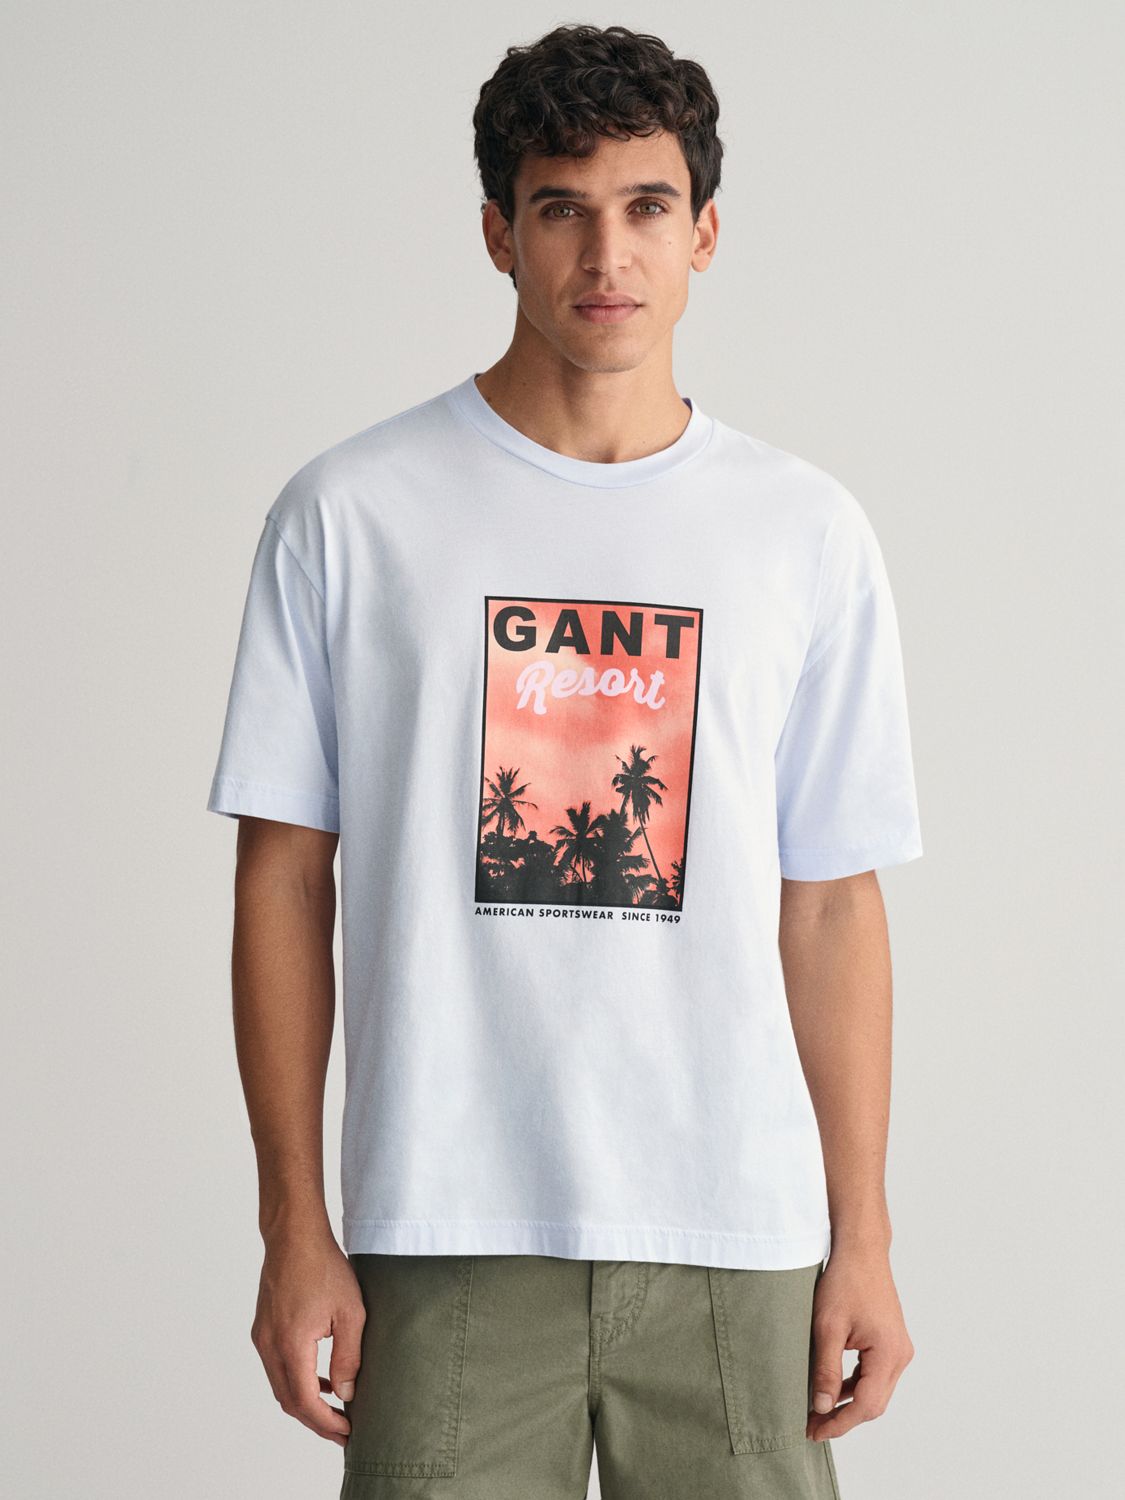 GANT Washed Graphic Short Sleeve T-Shirt, Light Blue/Multi, M